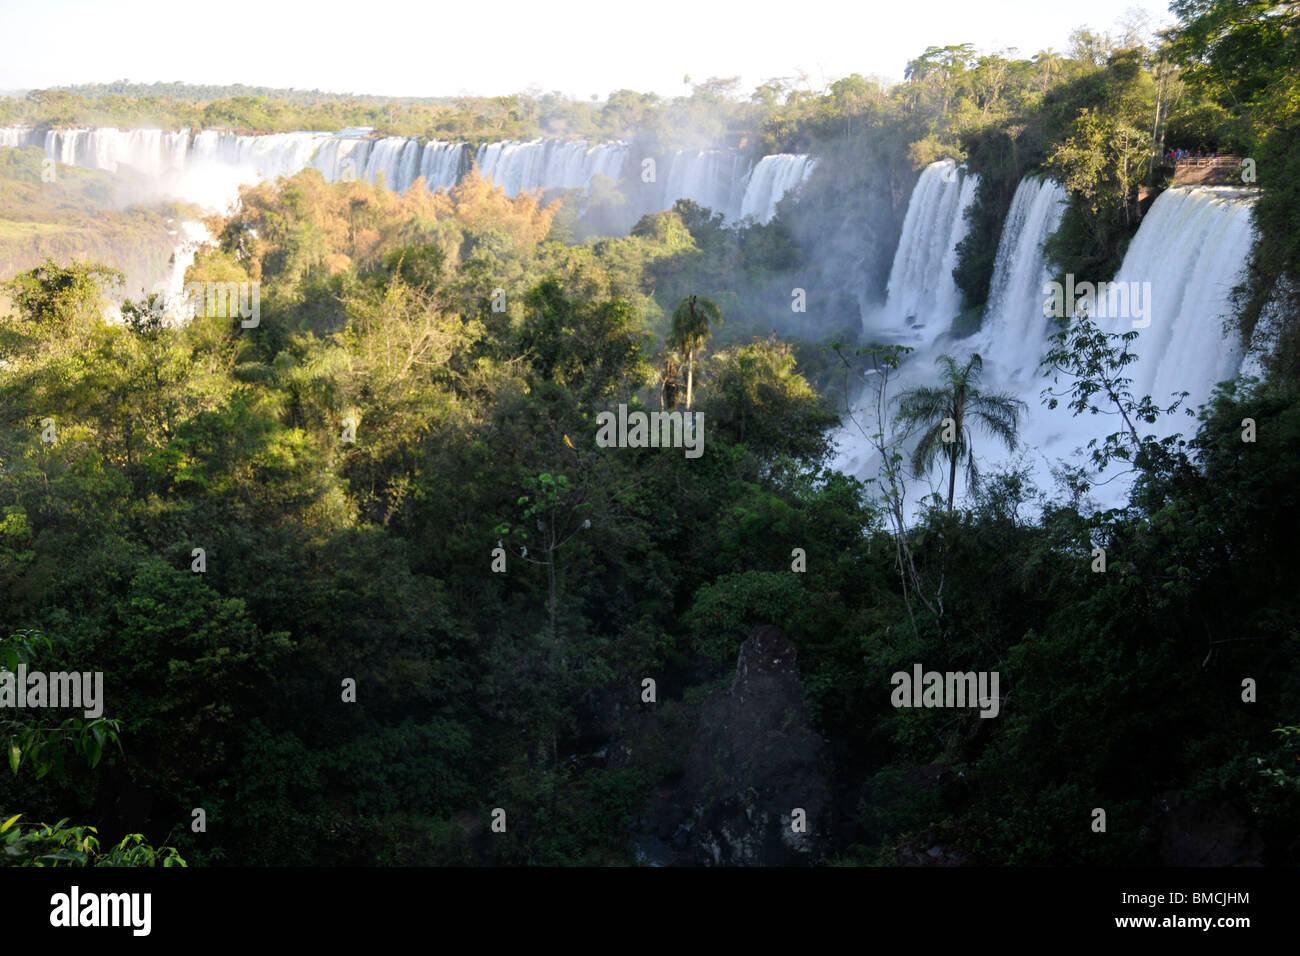 Salto San Martin, Iguassu falls, Iguazu national park, Puerto Iguazu, Argentina Stock Photo